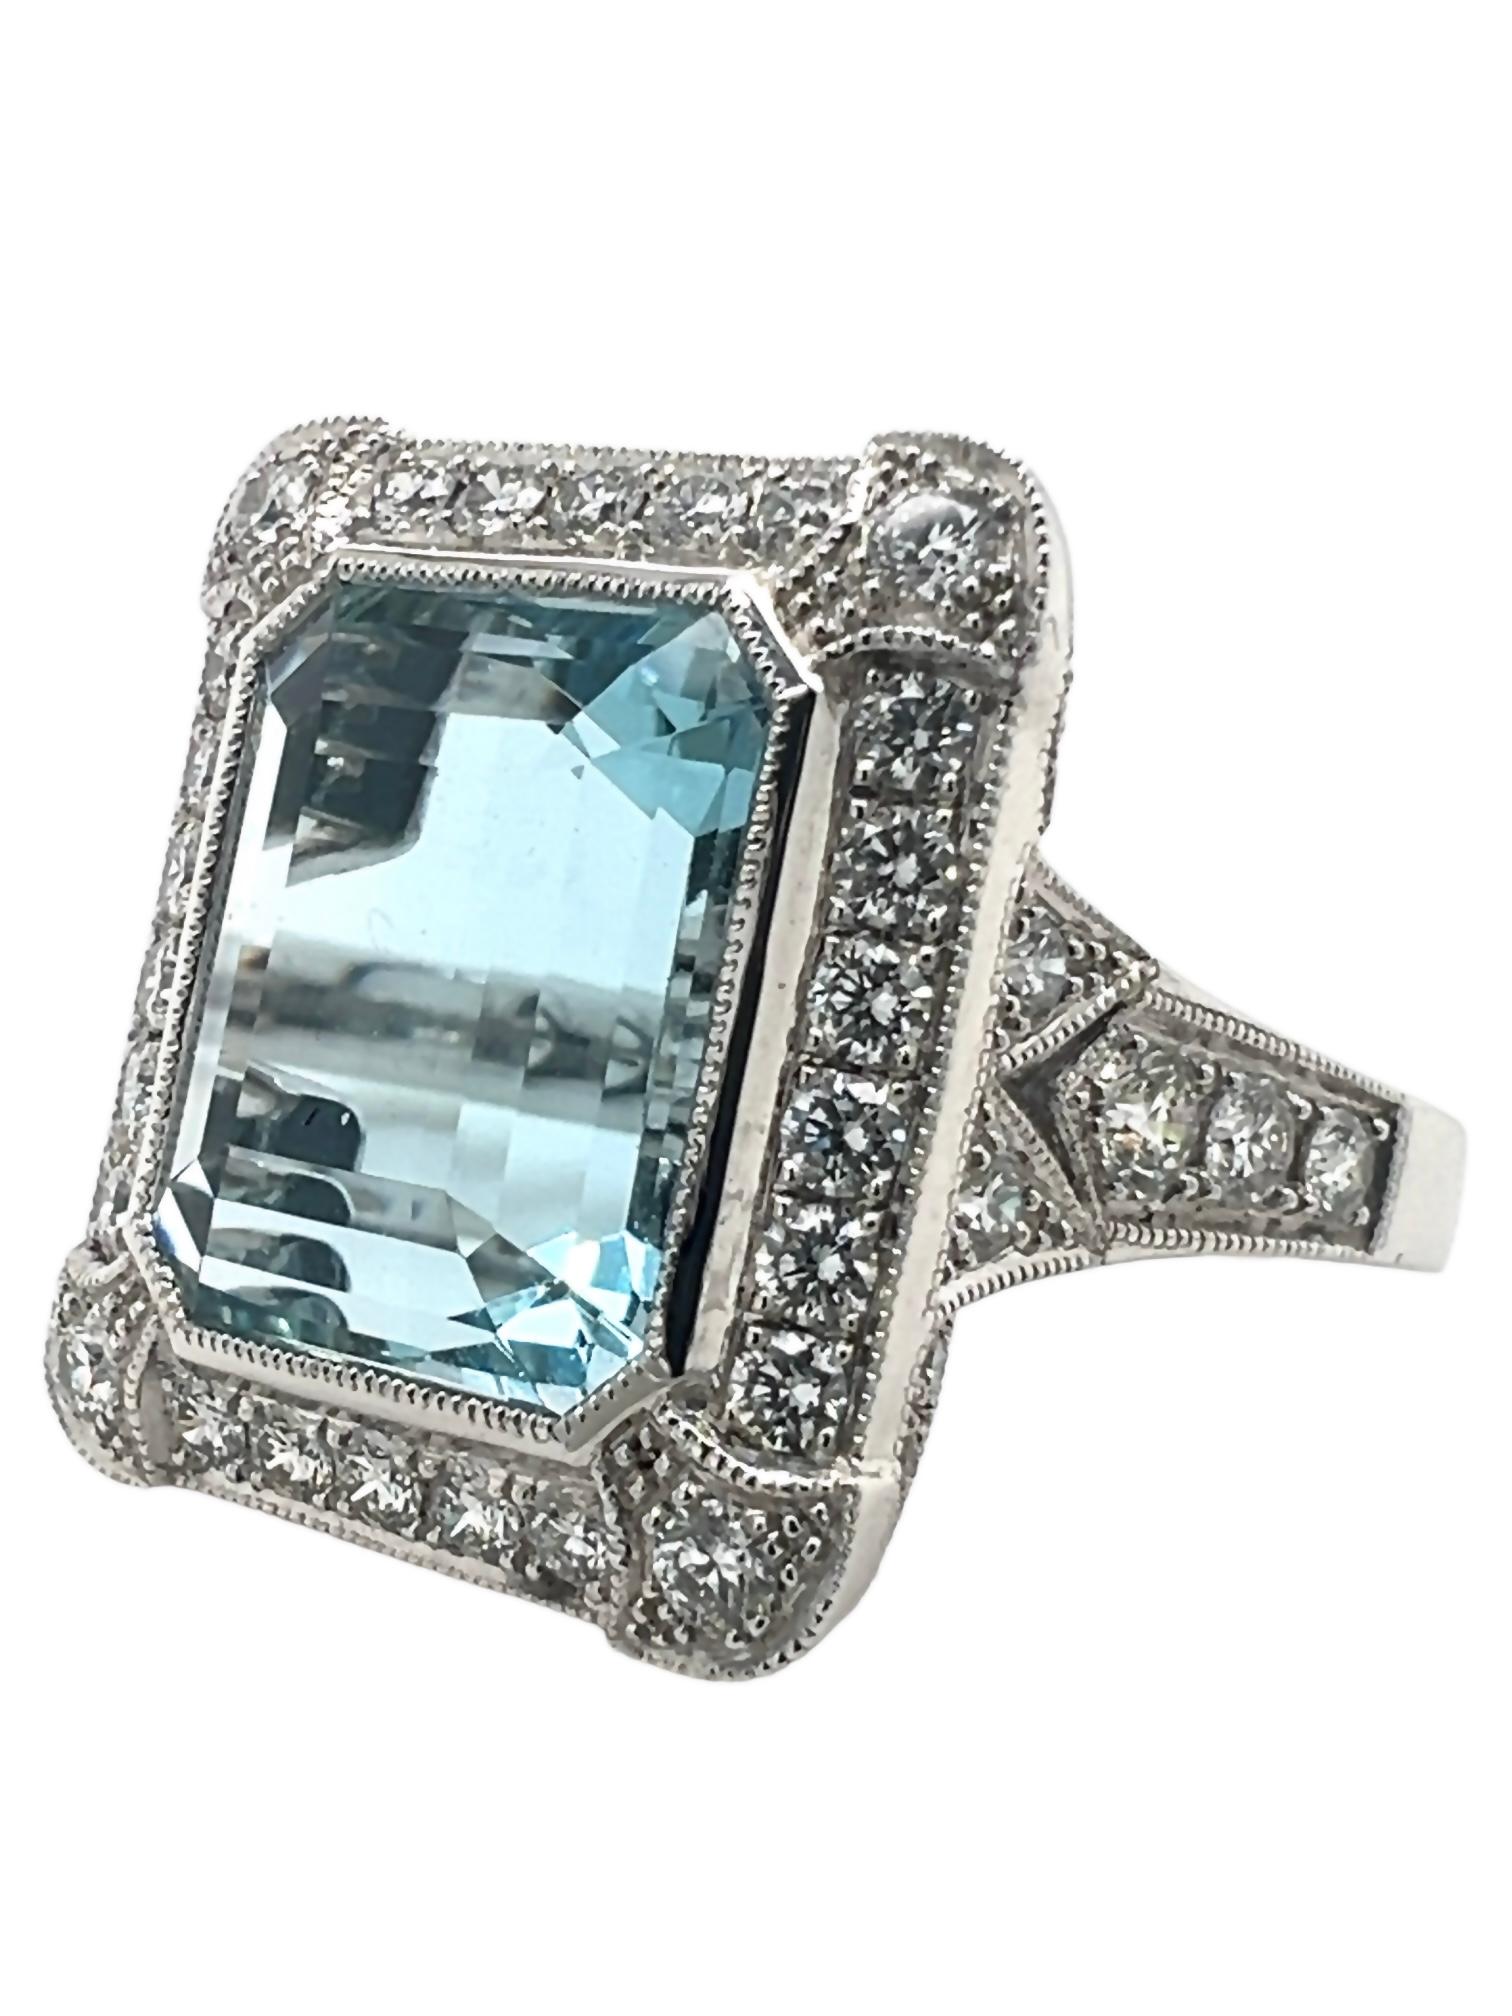 Art Deco Sophia D. 7.70 Carat Aquamarine Ring For Sale